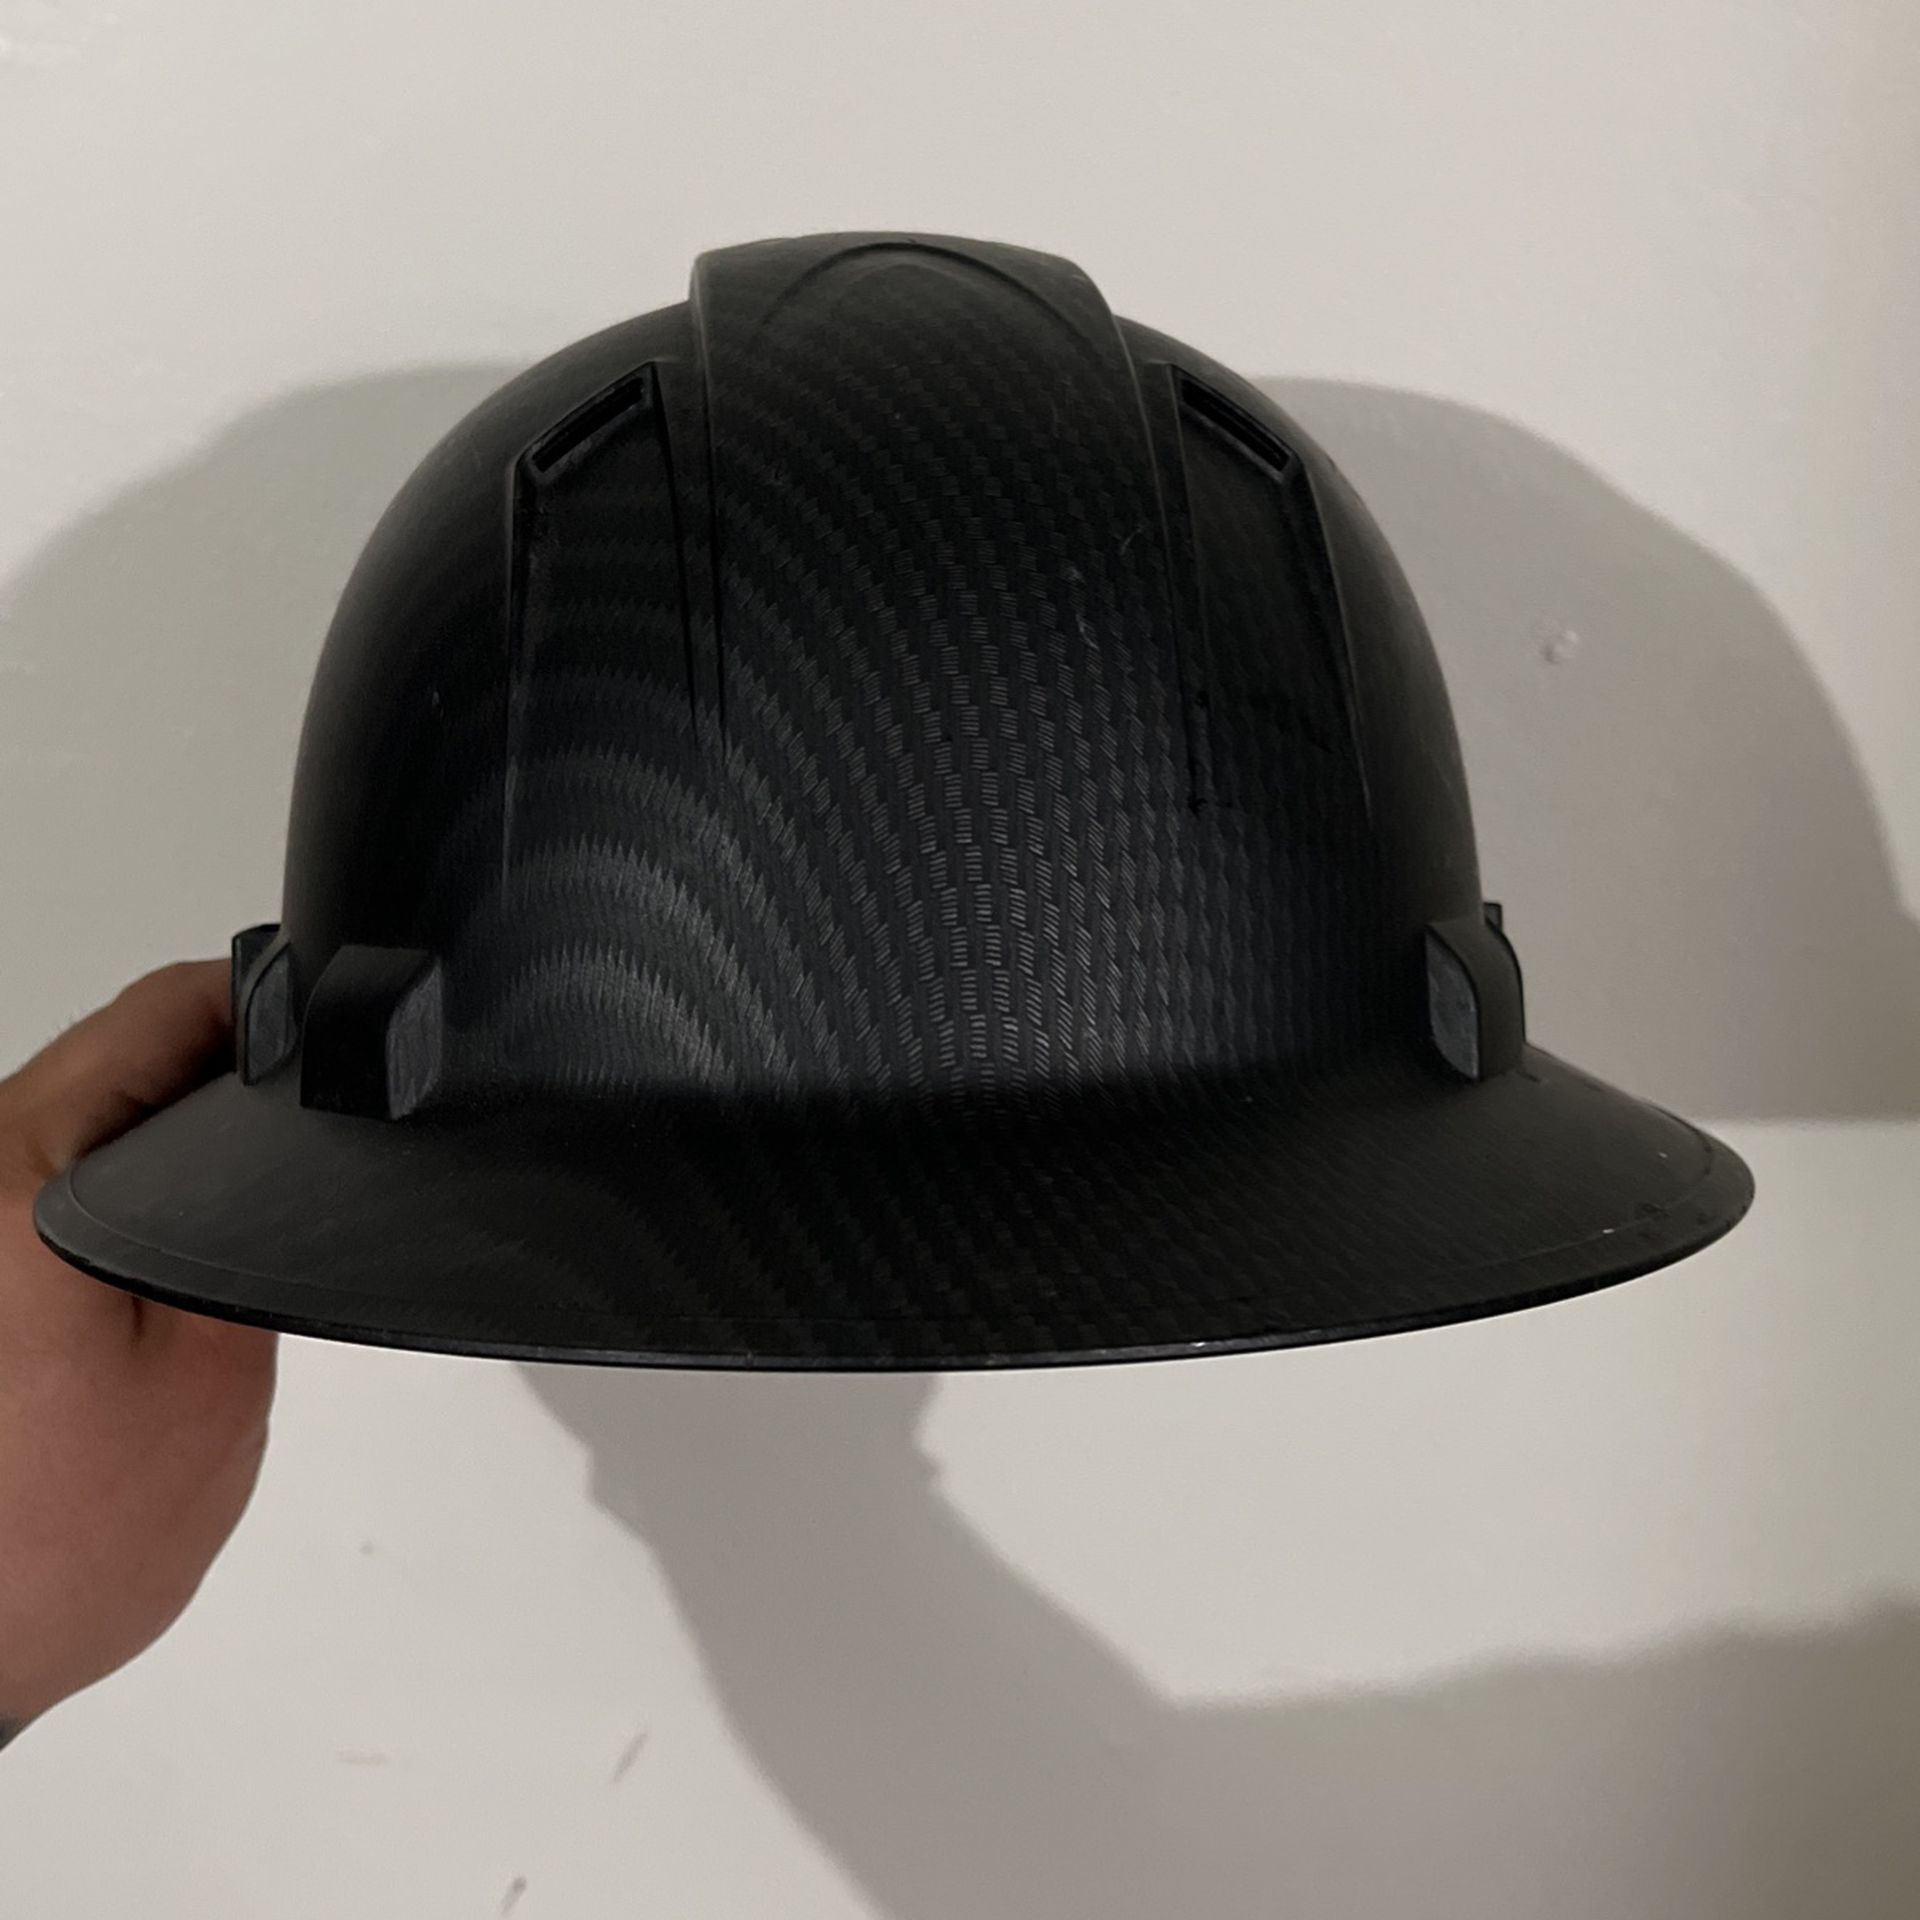 carbon fiber hard hat 30$